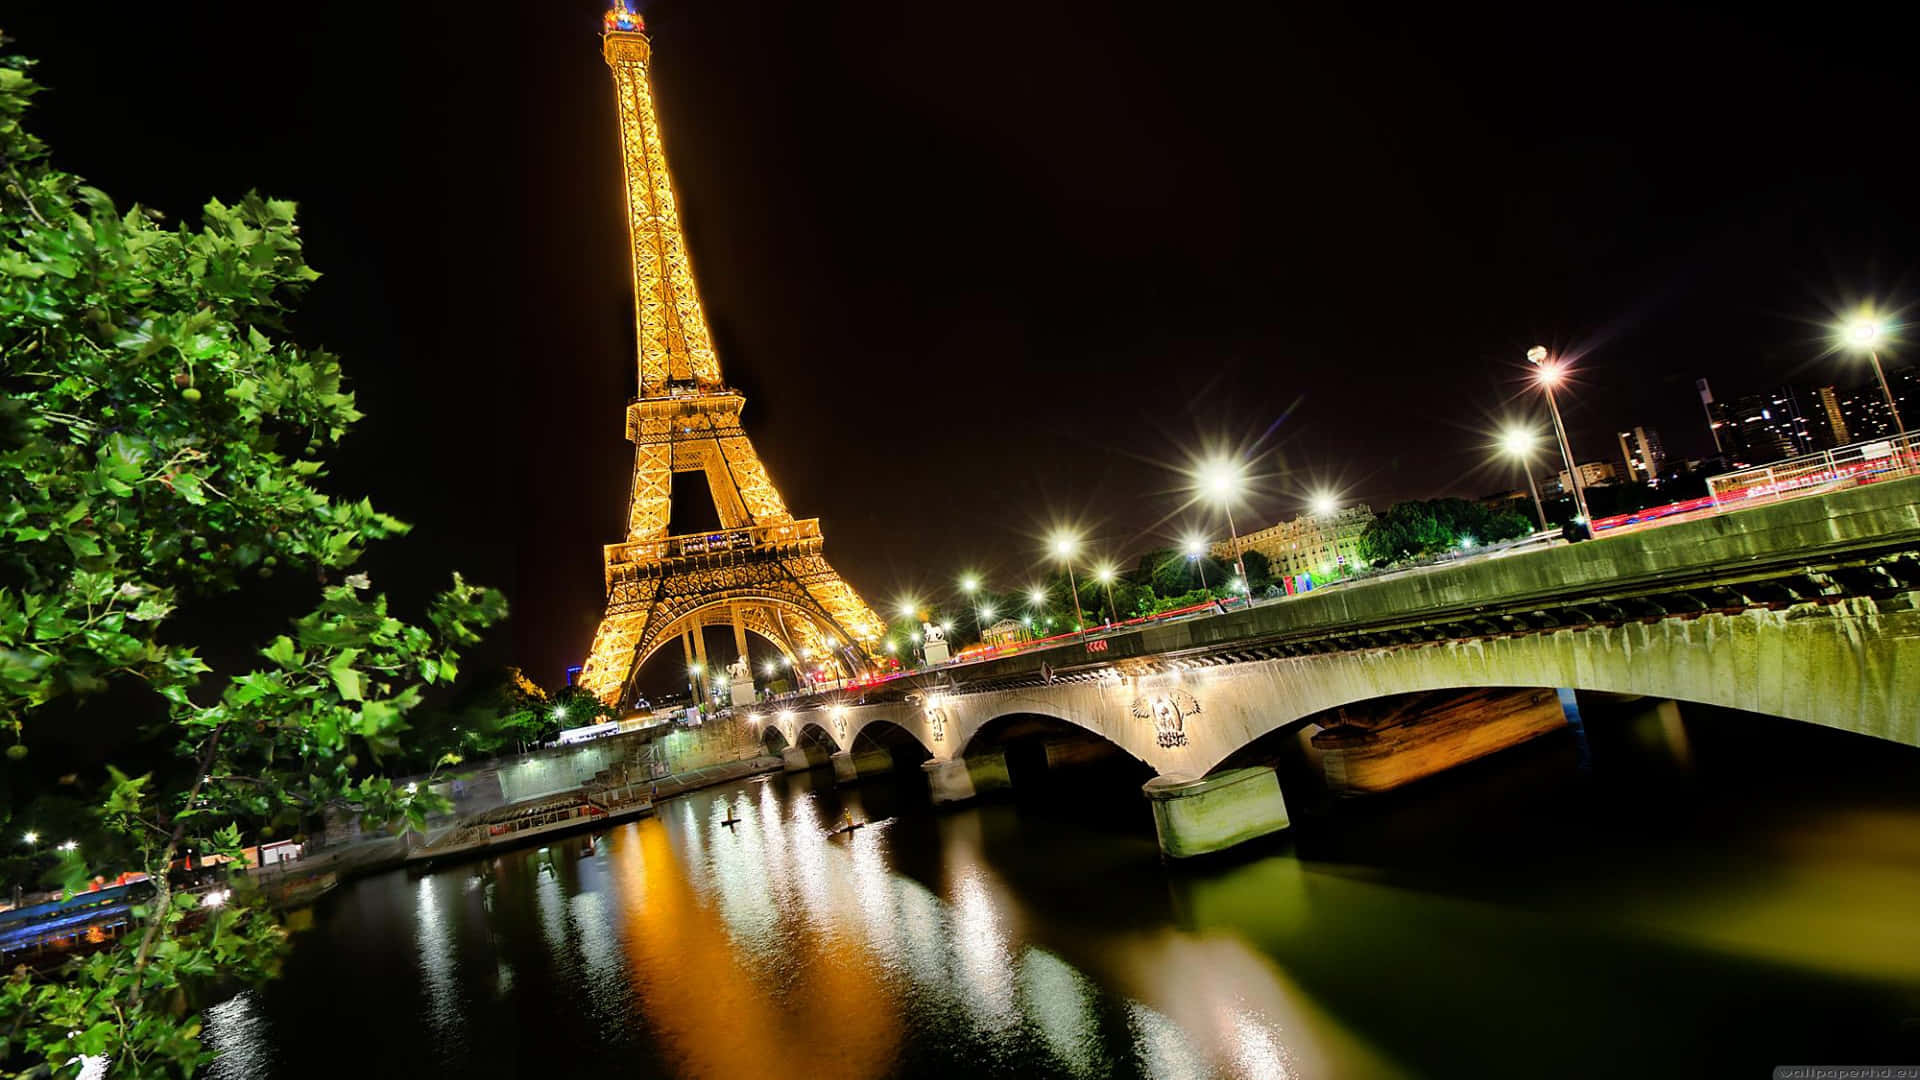 The Illuminated Eiffel Tower at Night